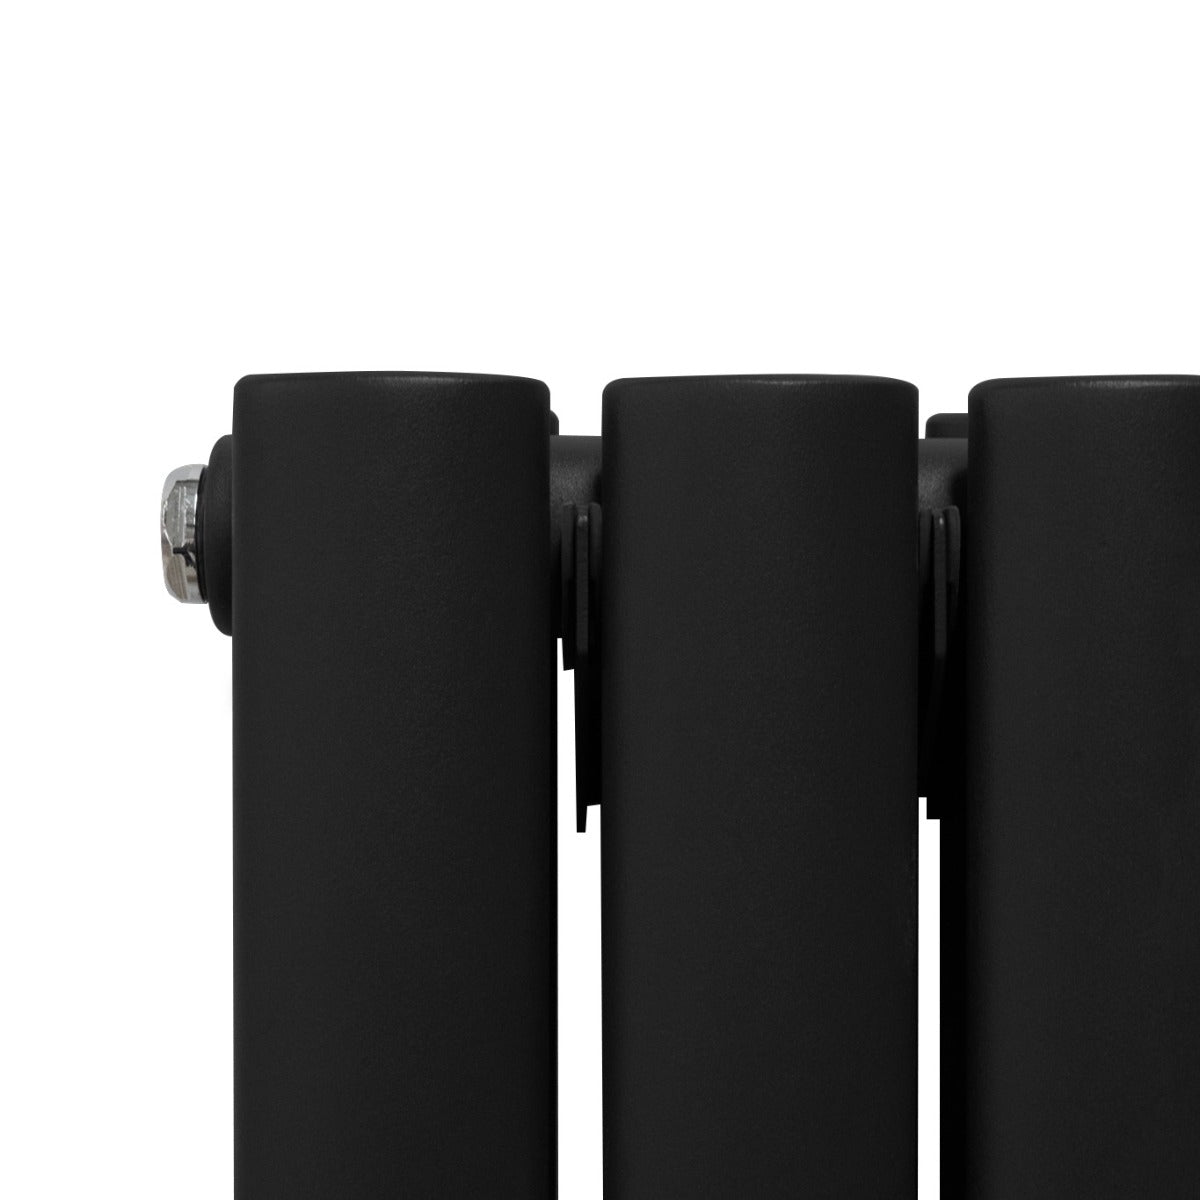 Radiador de Columna Ovalada con Espejo - 1800 mm x 380 mm - Negro